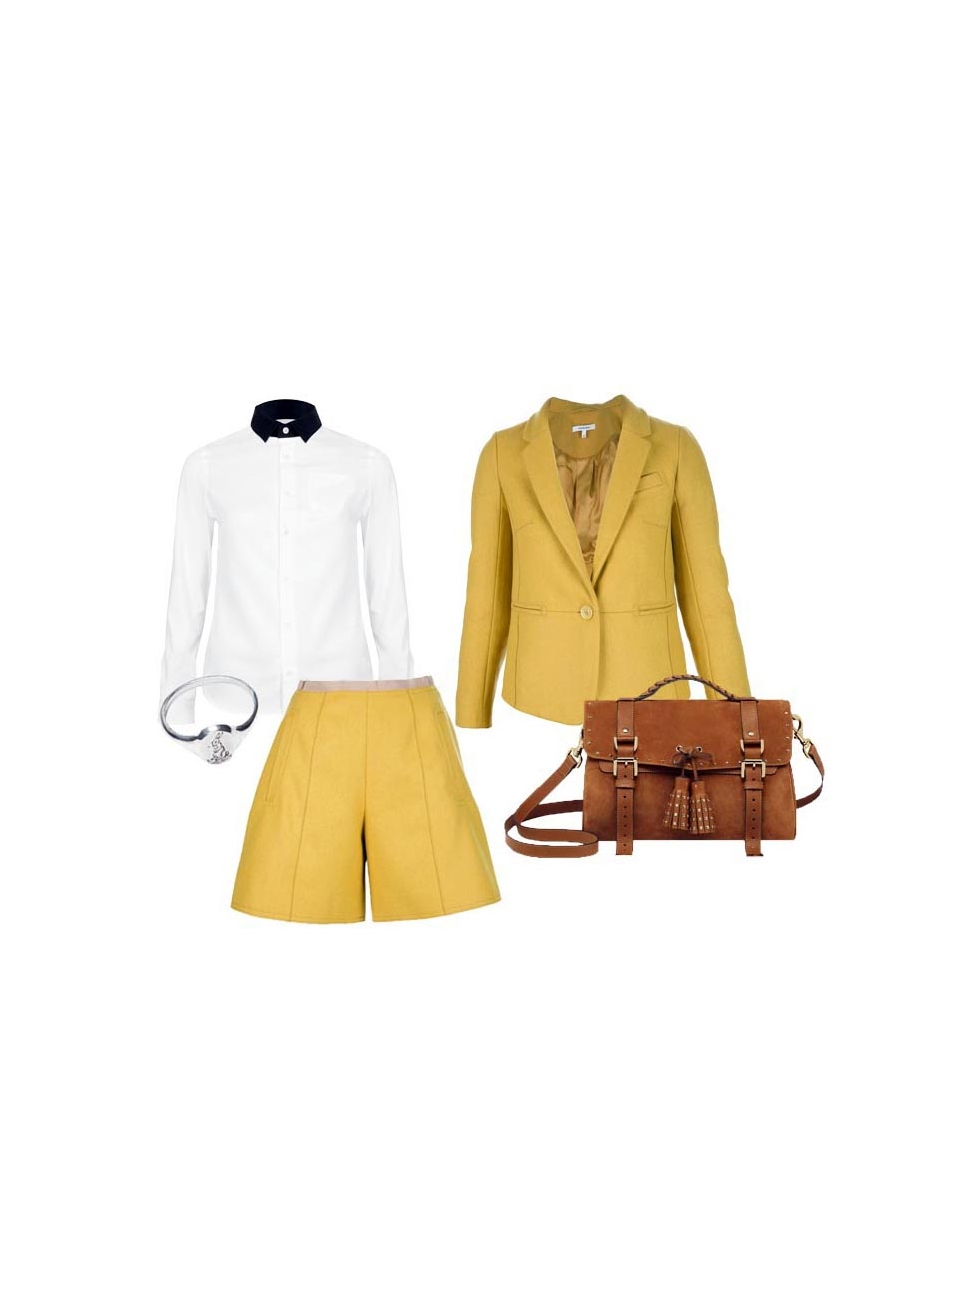 Wool jacket Louis Feraud Yellow size 40 FR in Wool - 26338160